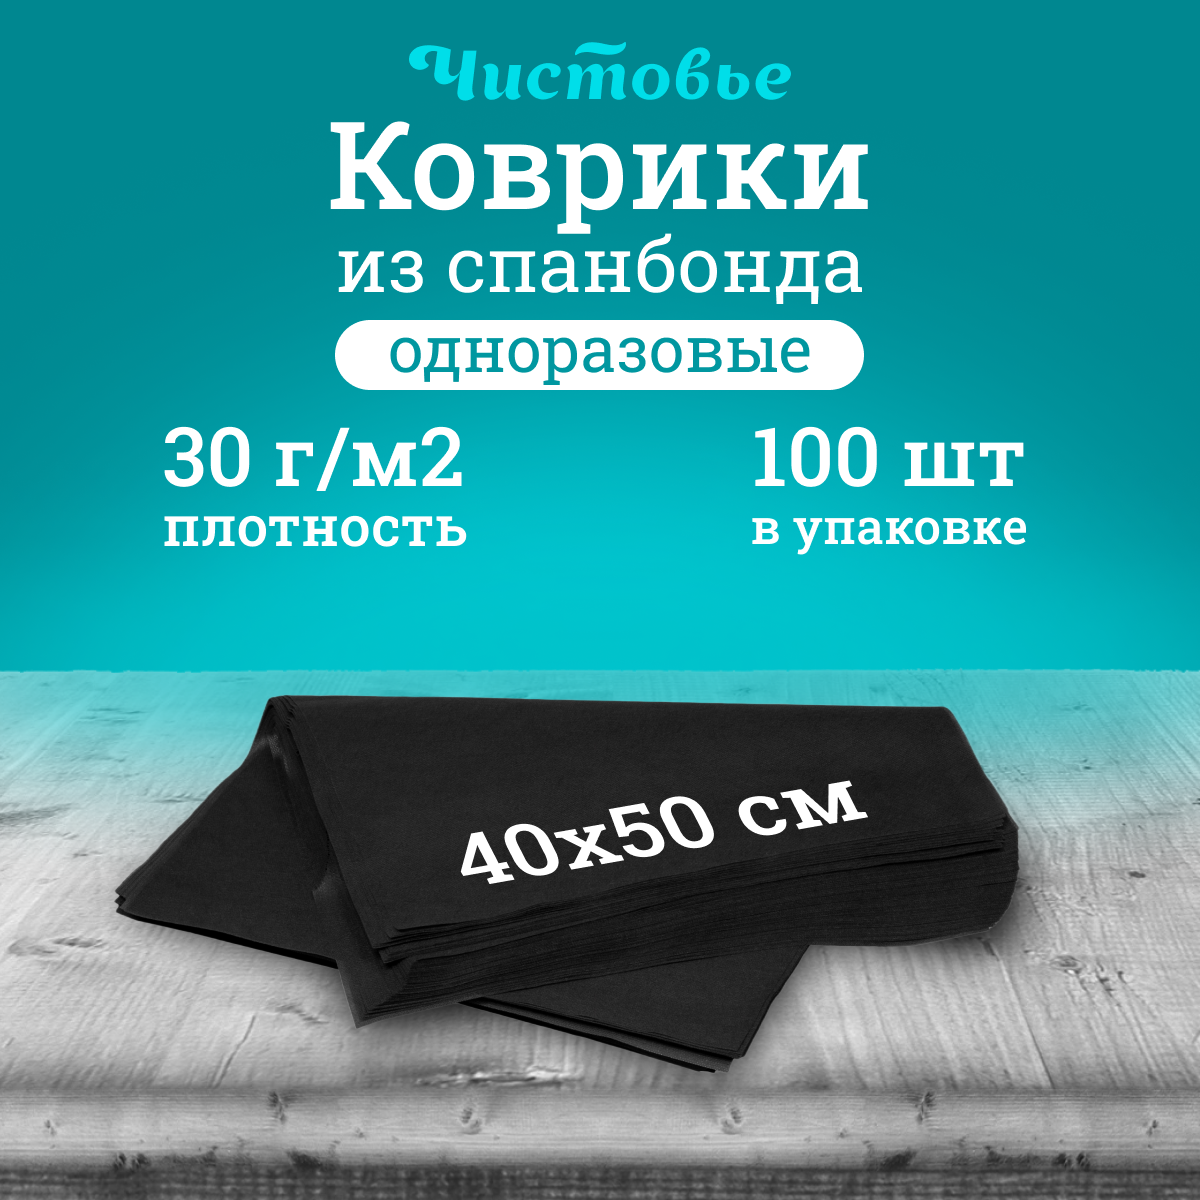 Коврик одноразовый Чистовье черный, спанбонд 40х50 см, 100 шт/уп